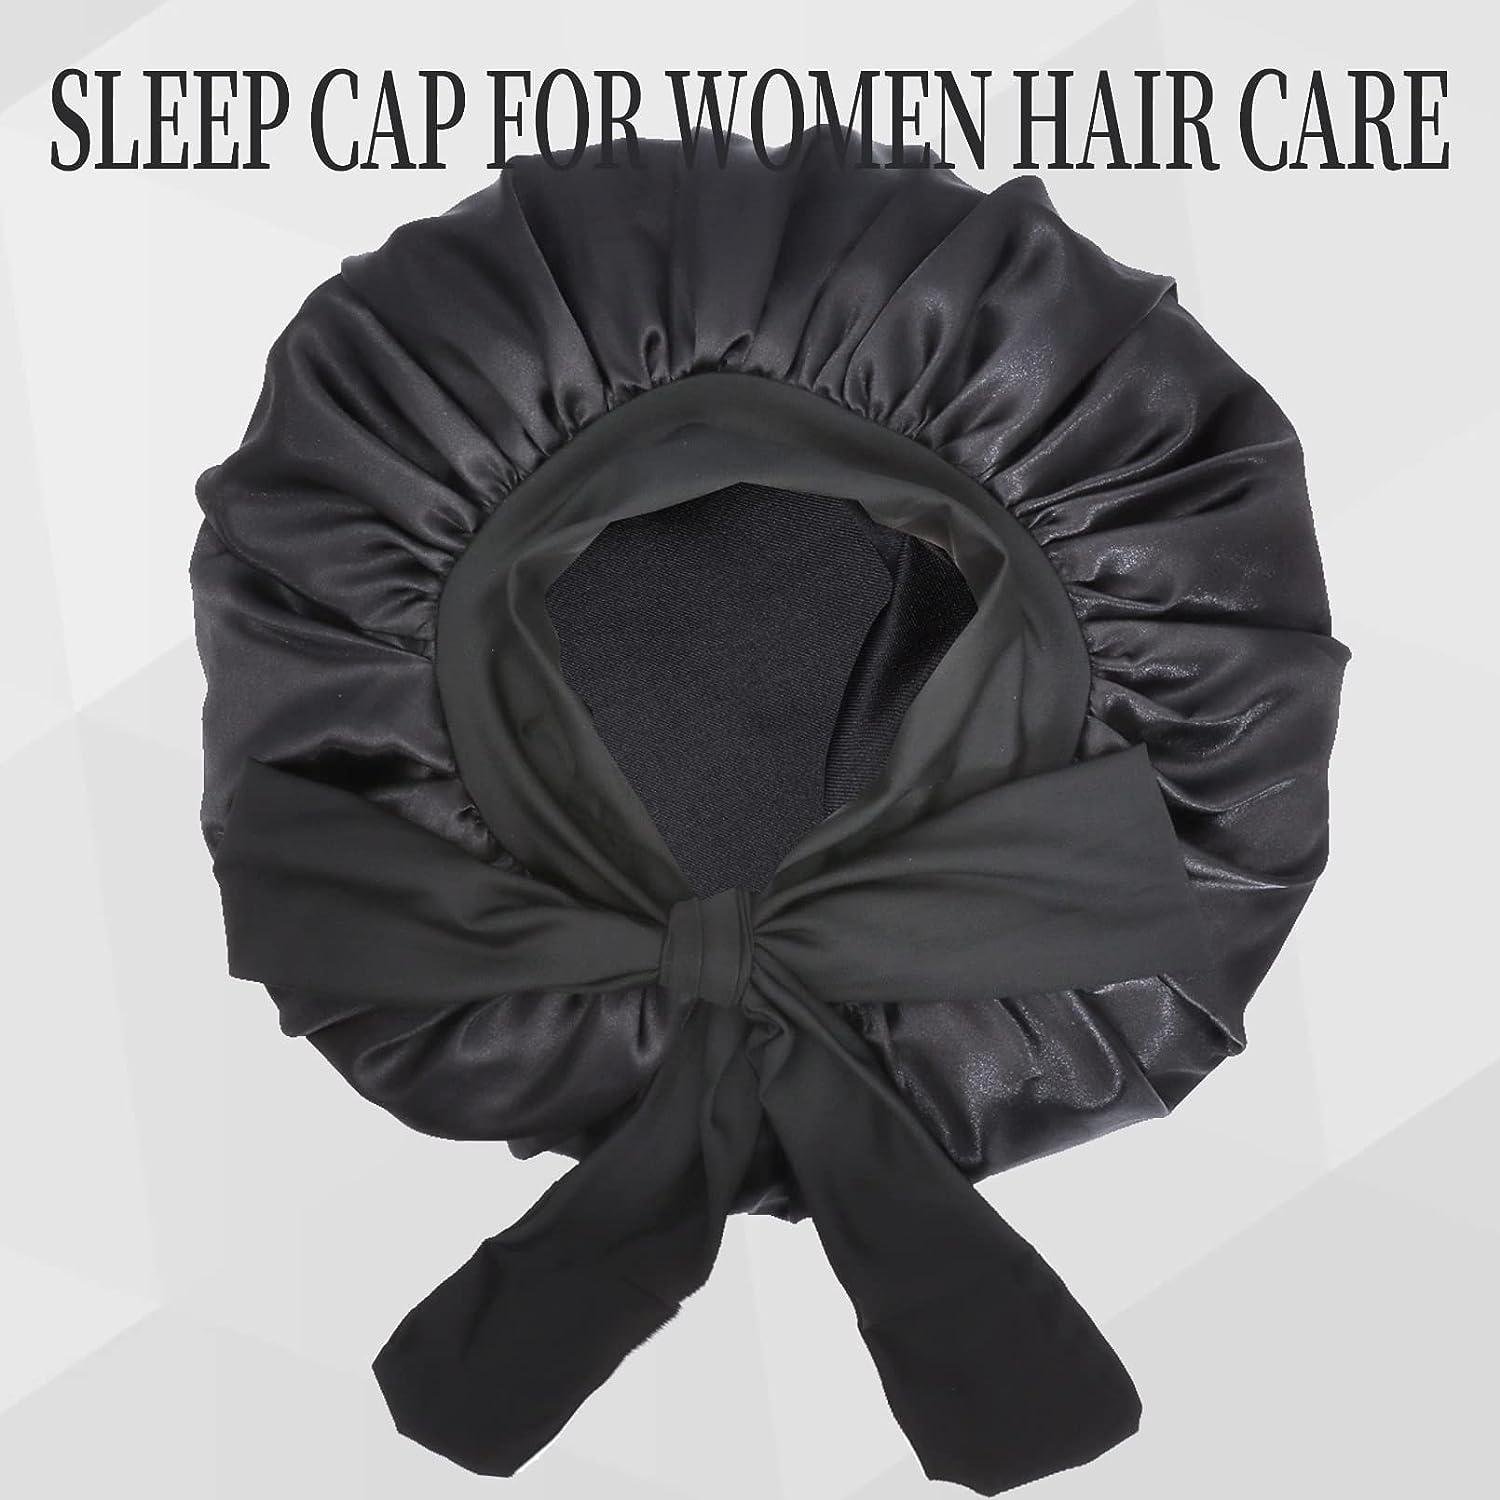 2PCS Satin Bonnet for Black Women Jumbo Hair Bonnet Adjustable